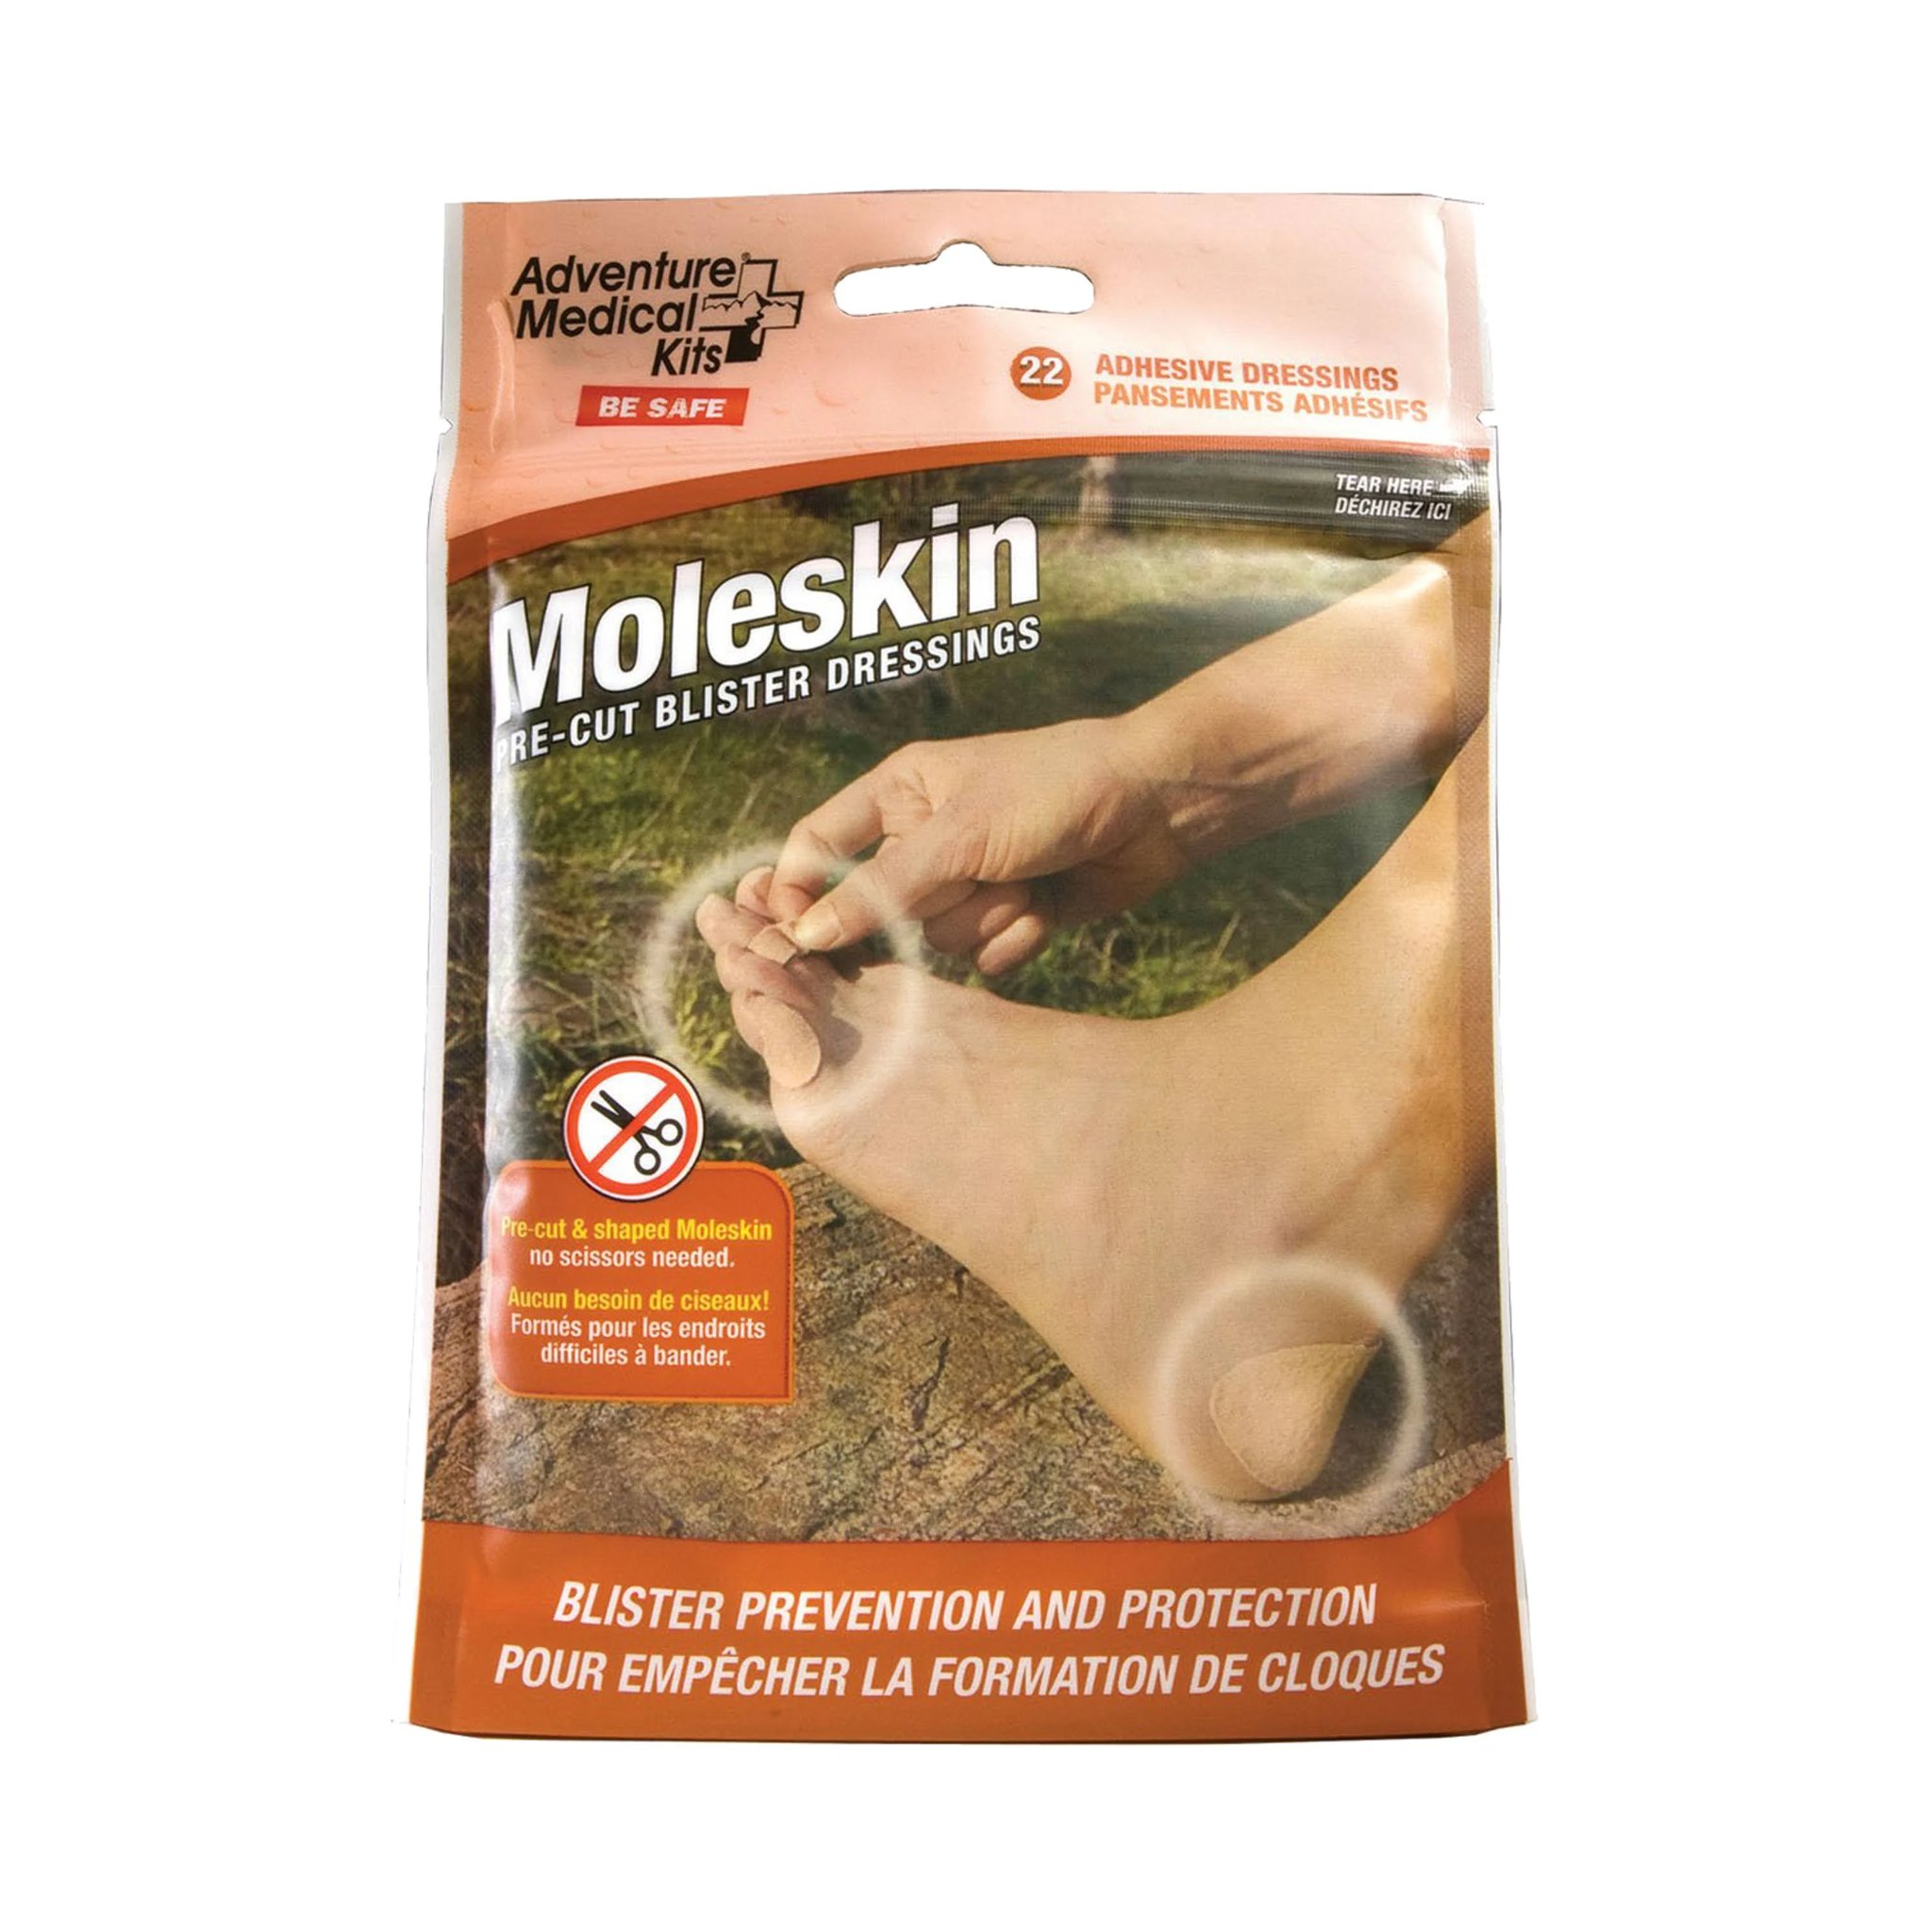 Moleskin Medical Kit Blister Prevention